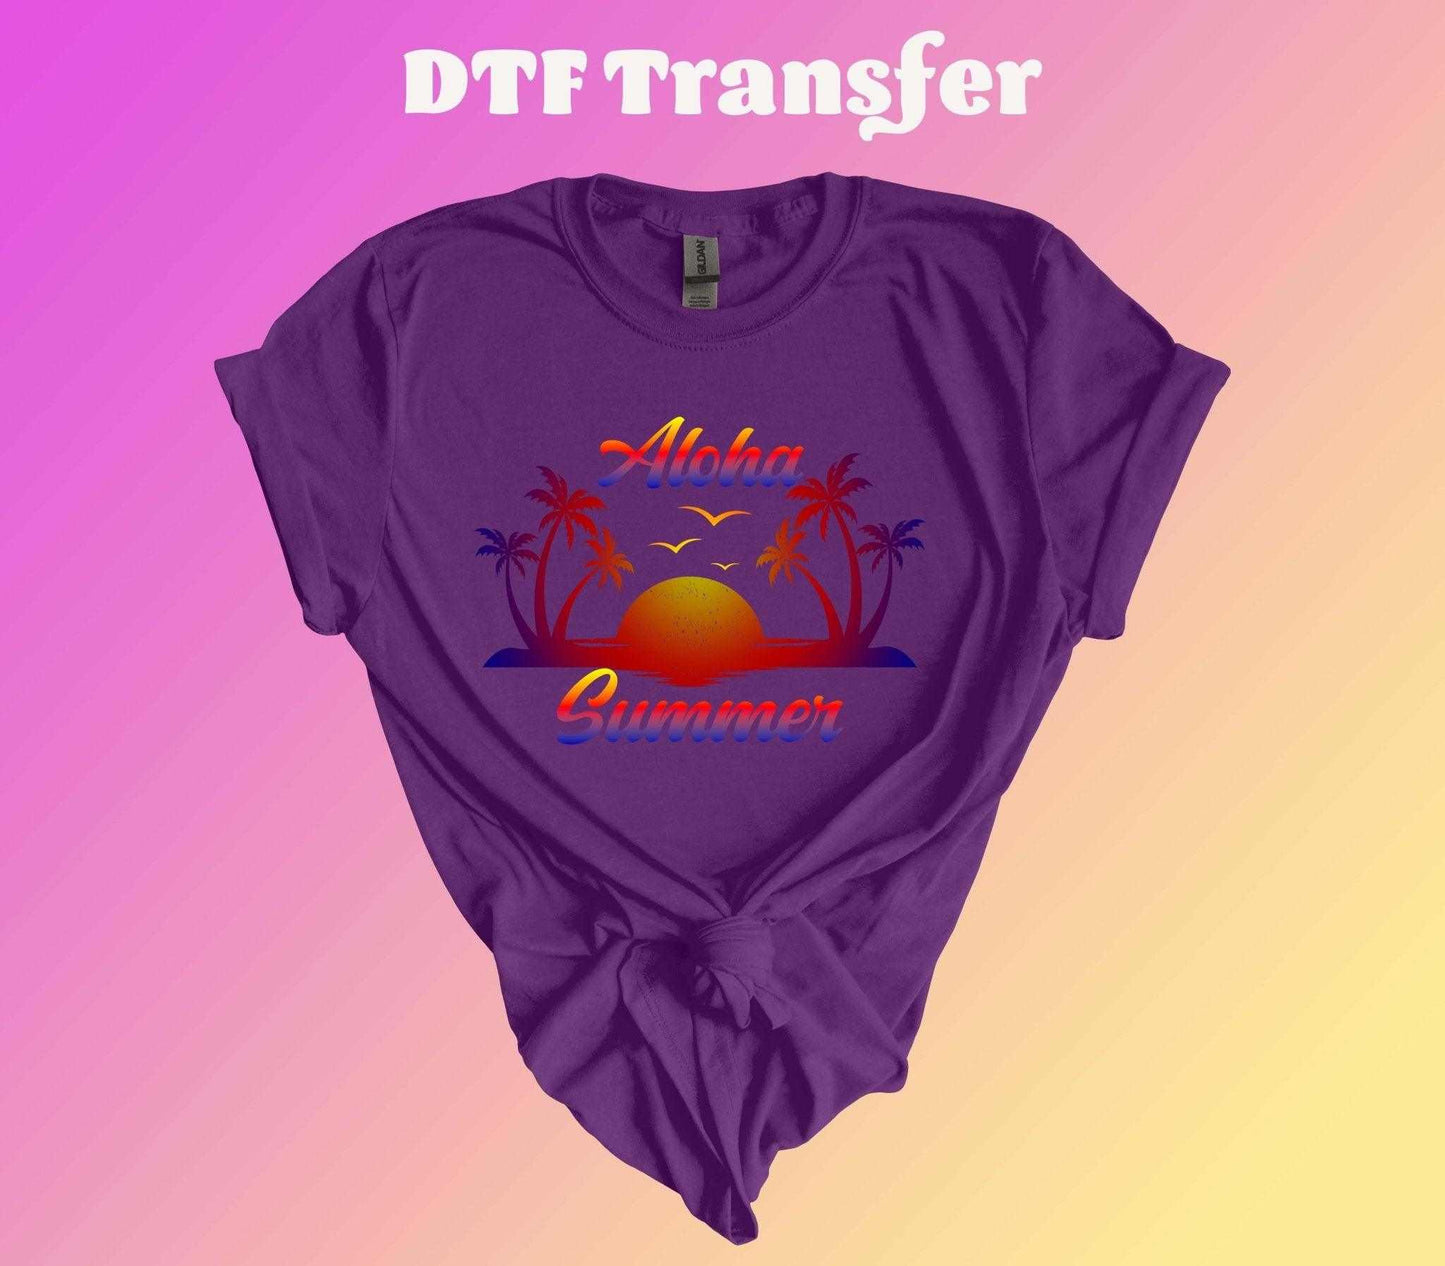 Aloha Summer DTF Transfer - Imagine With Aloha